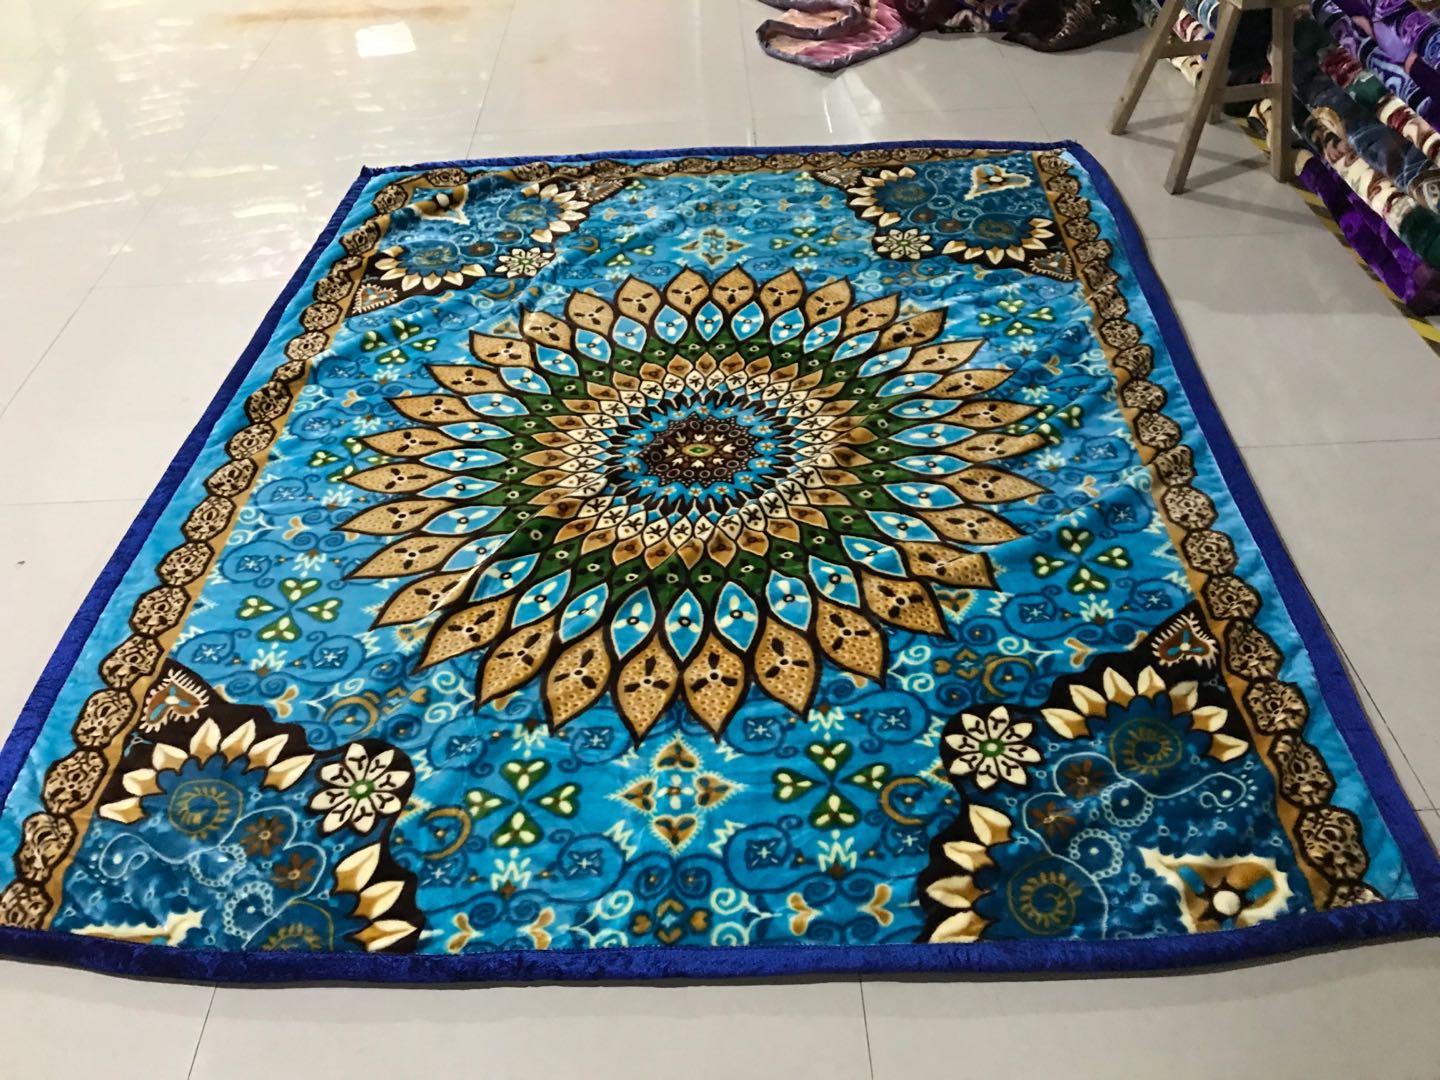 厂家批发外贸毛毯绒毯法兰绒珊瑚绒拉舍尔毛毯尺寸可定制花色67